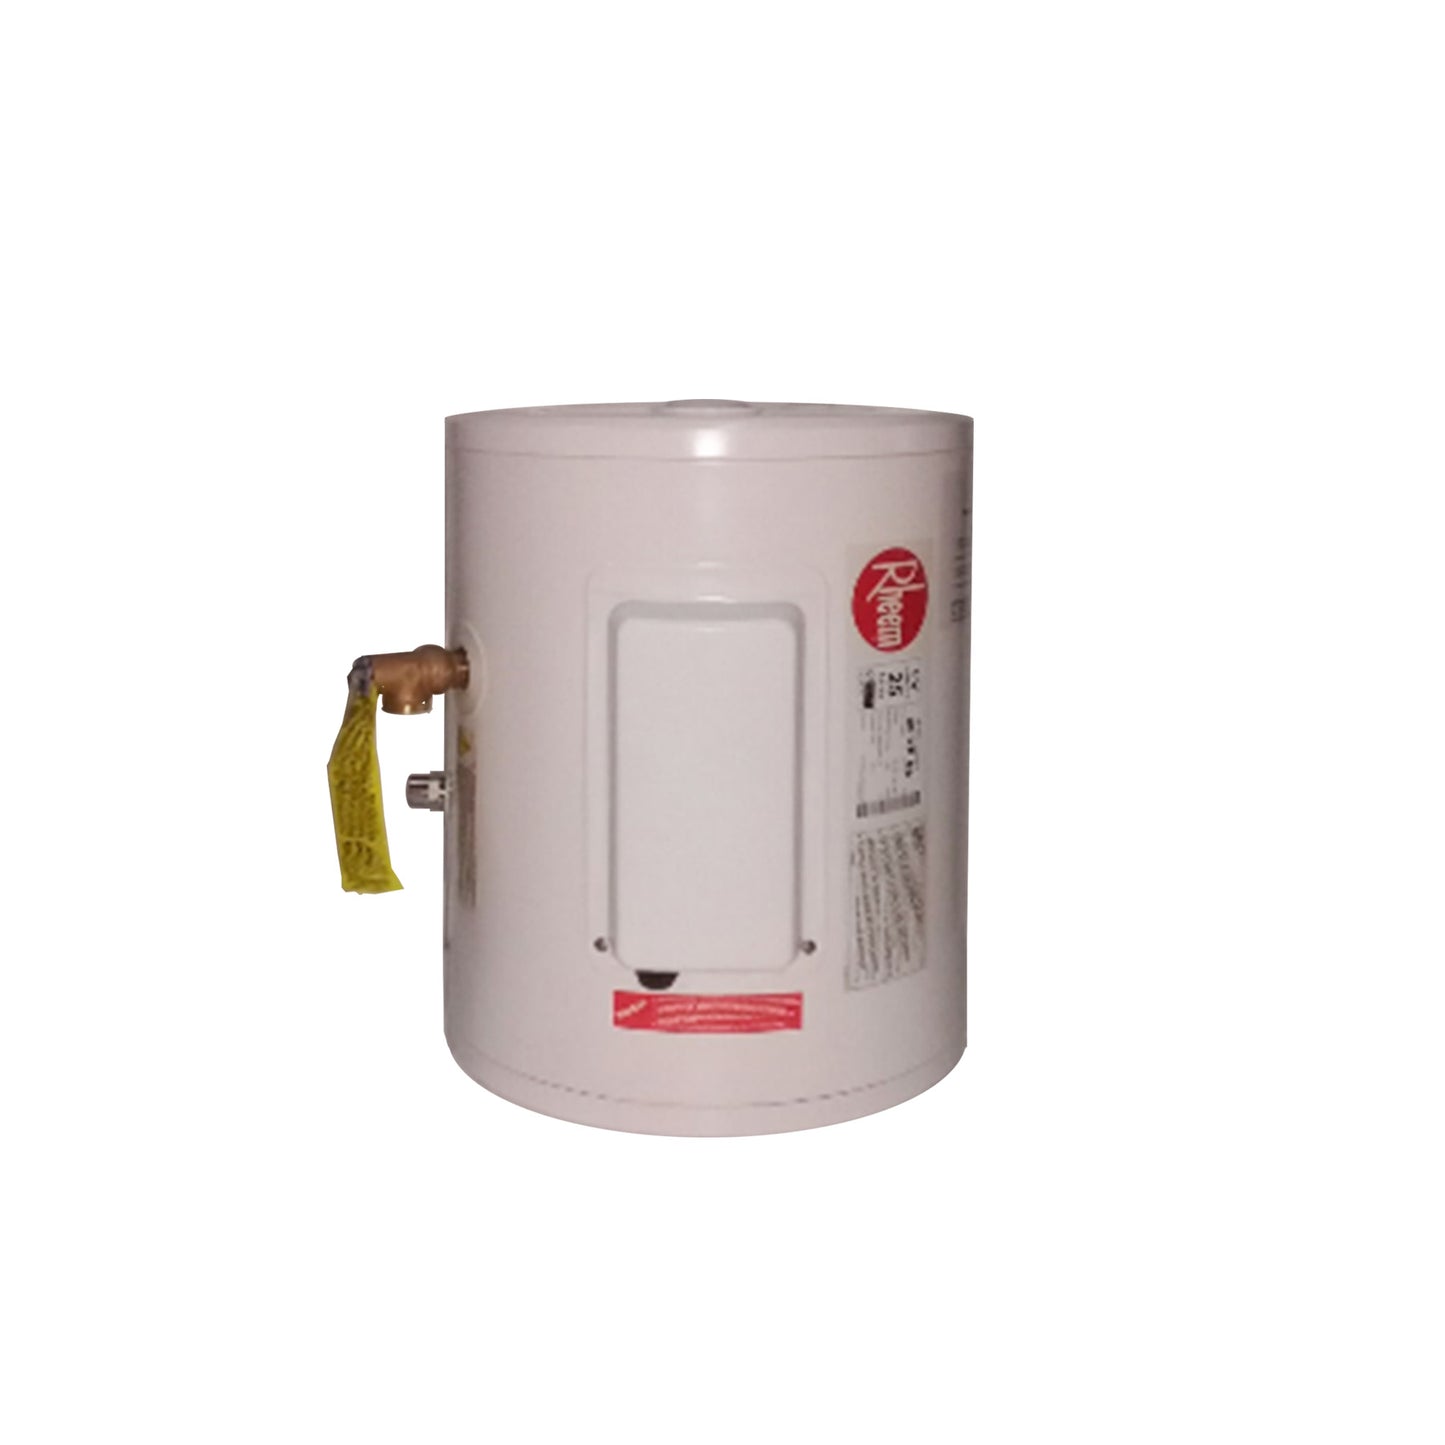 Rheem Storage Water Heater 86VP6S